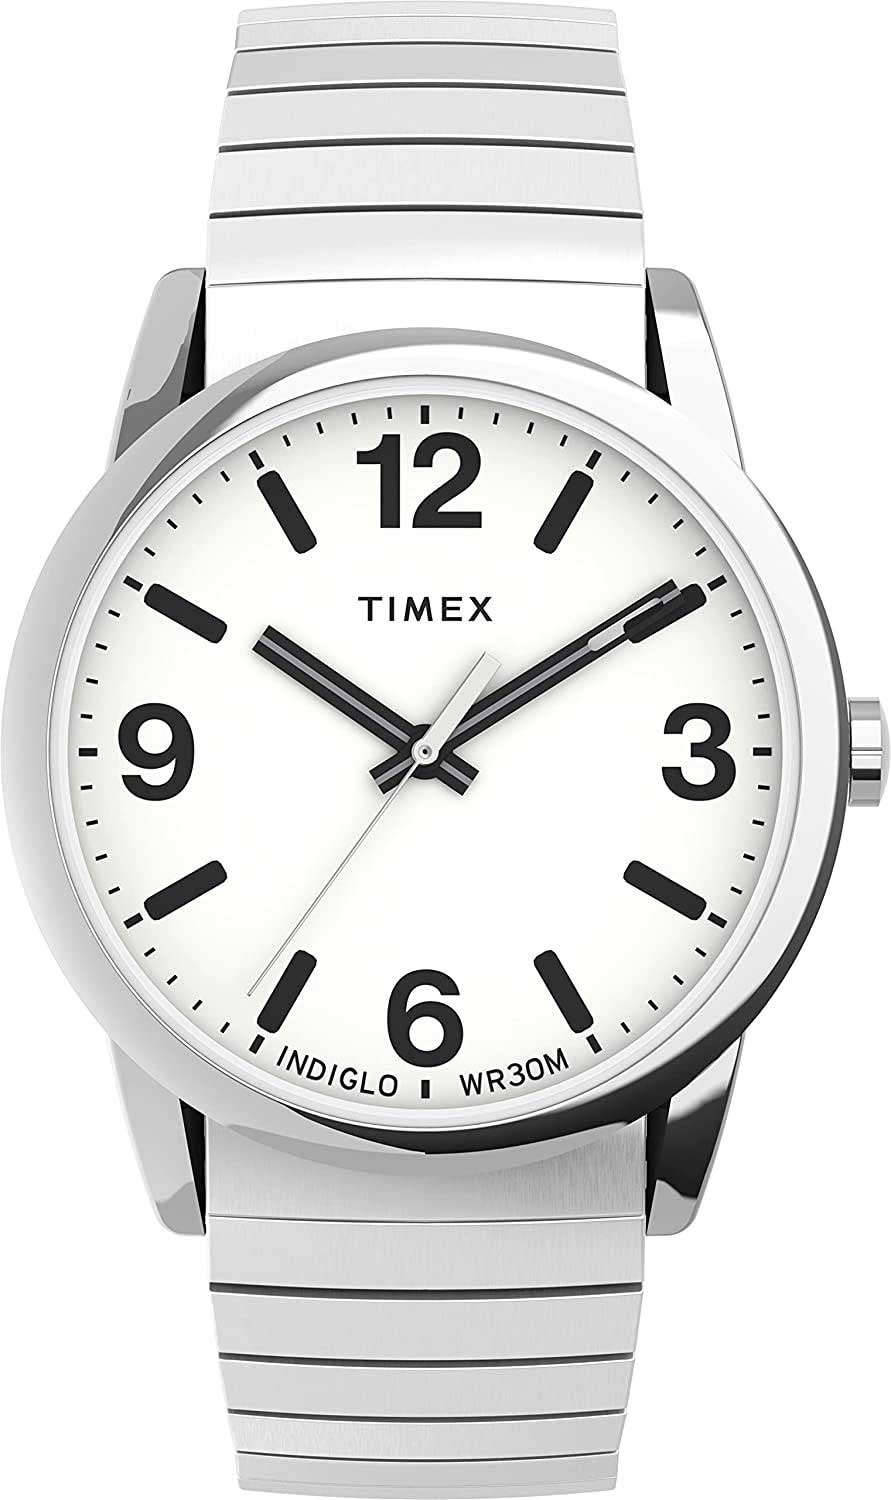 Наручные часы Timex TW2U98800-ucenka